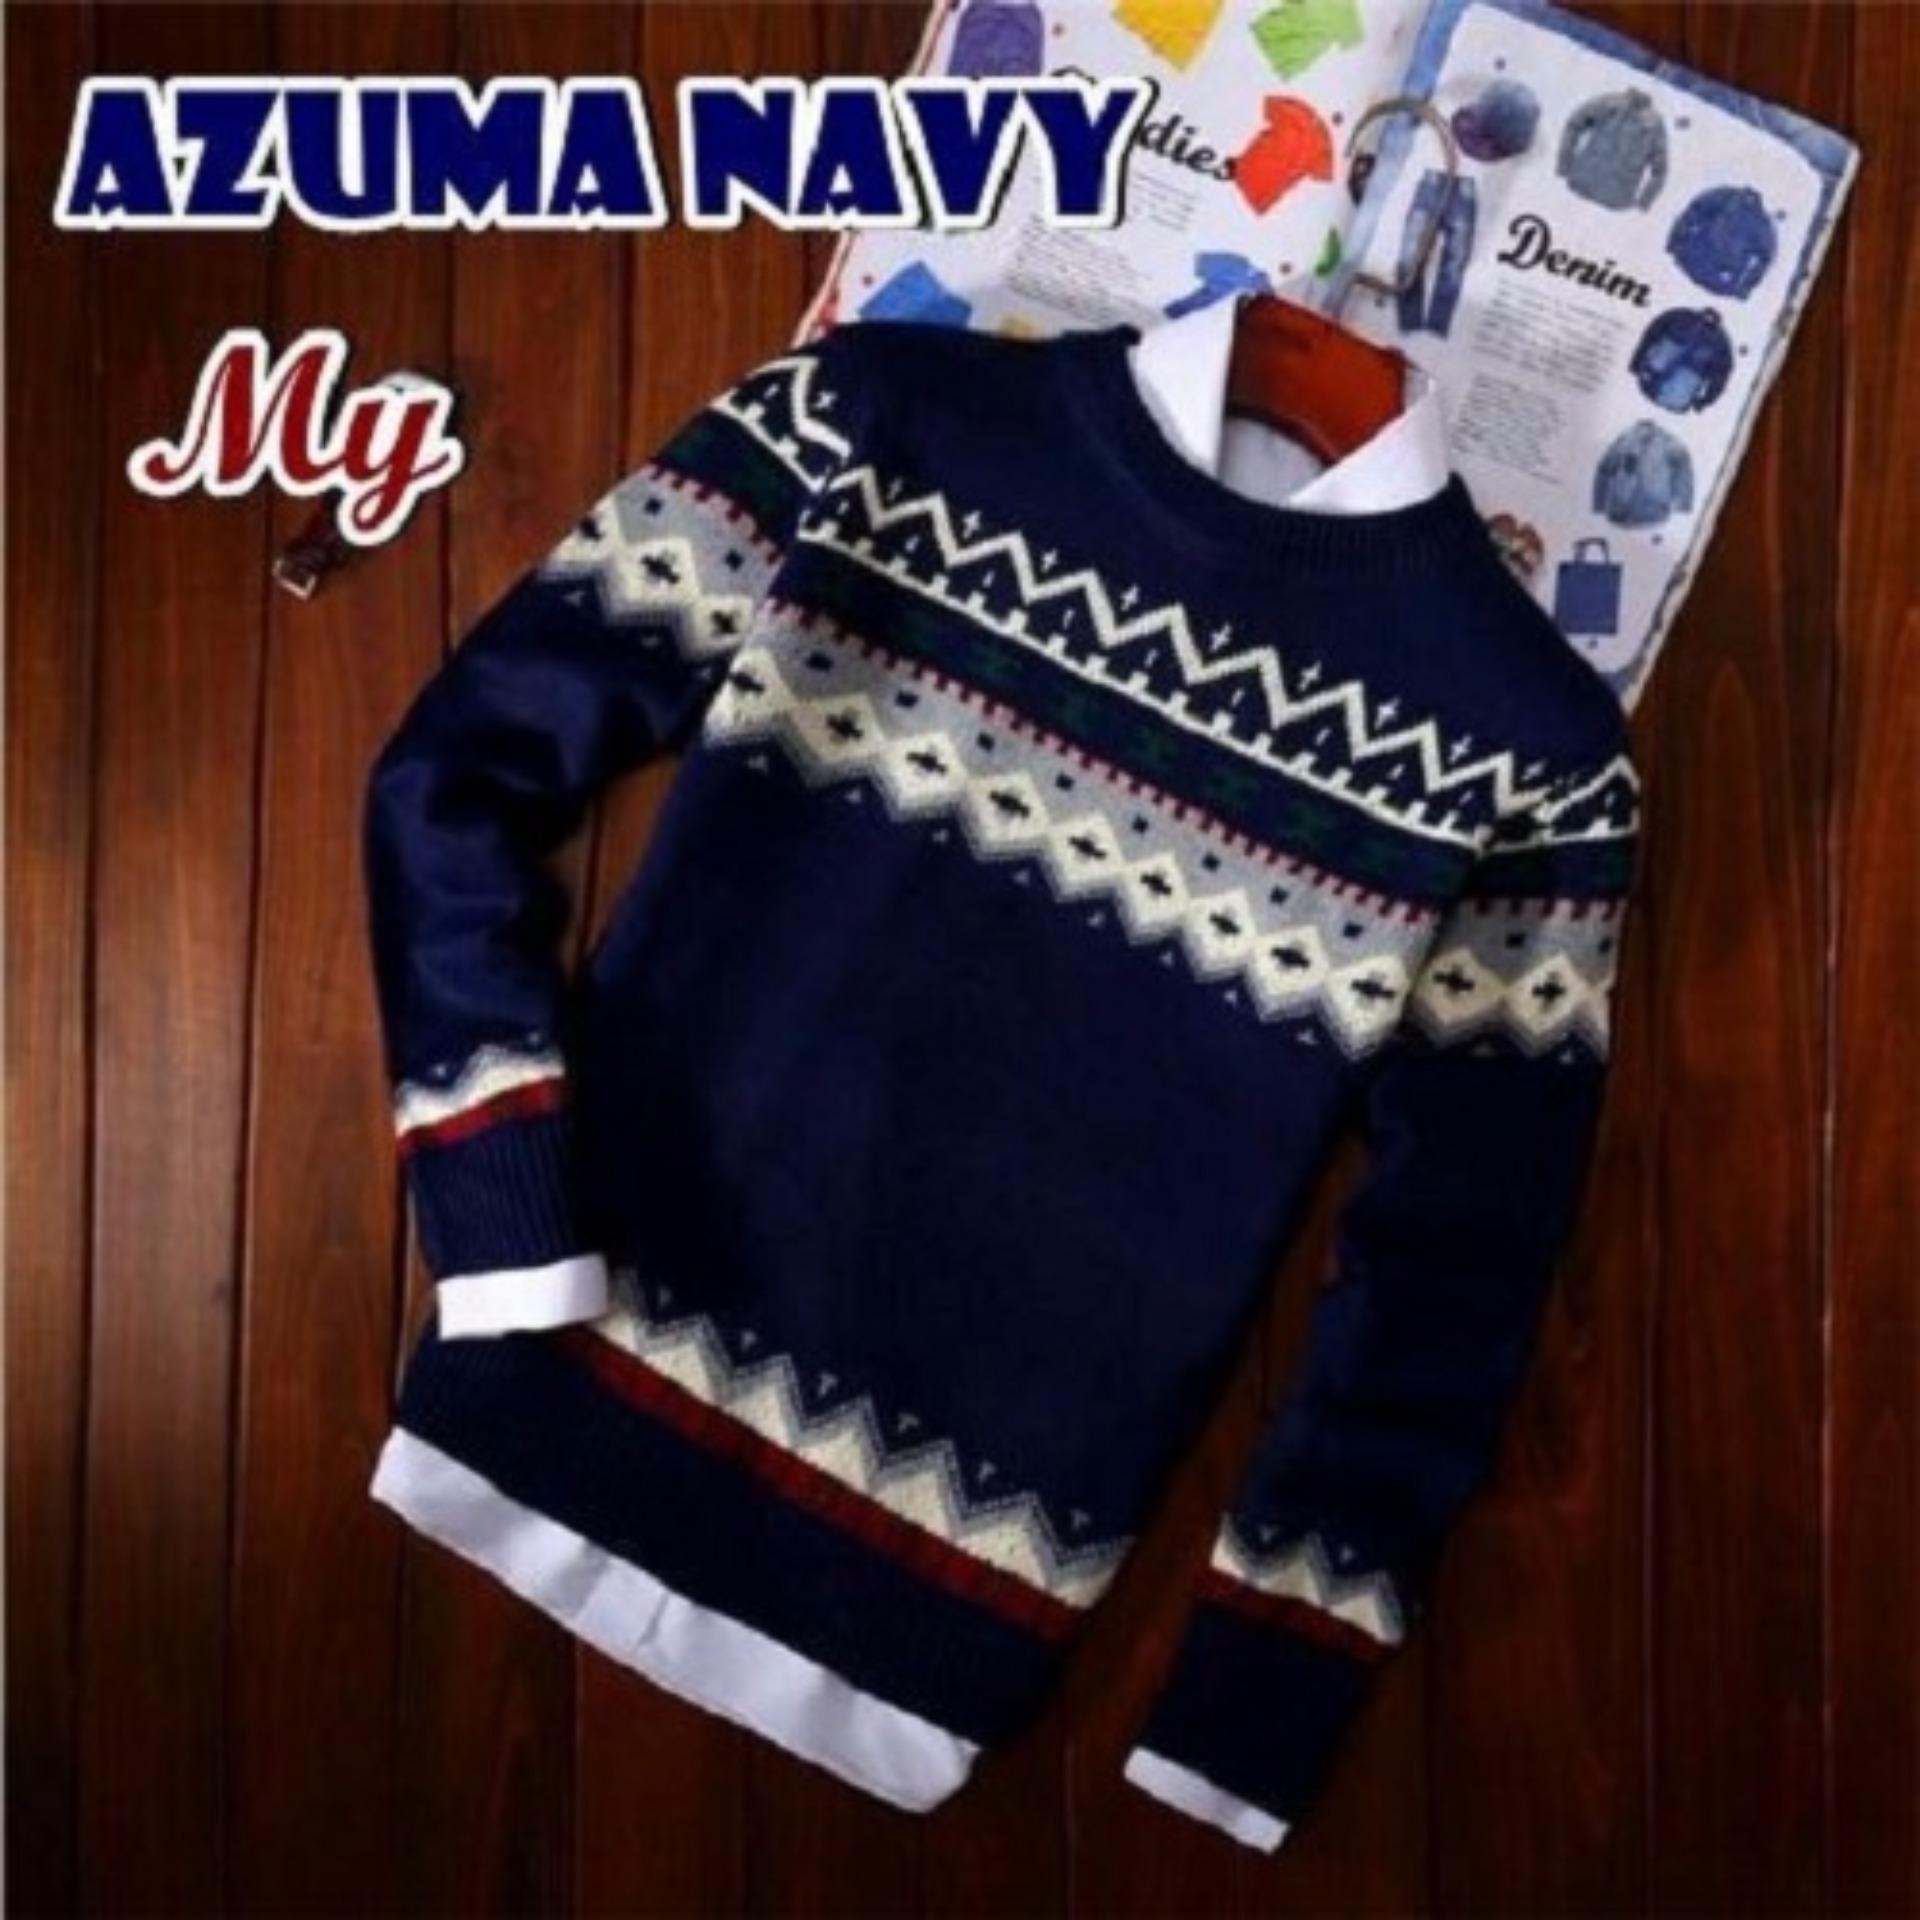 Azam Clobber - Sweater Pria Rajut - Azuma Navy Sweater - Rajut Tribal